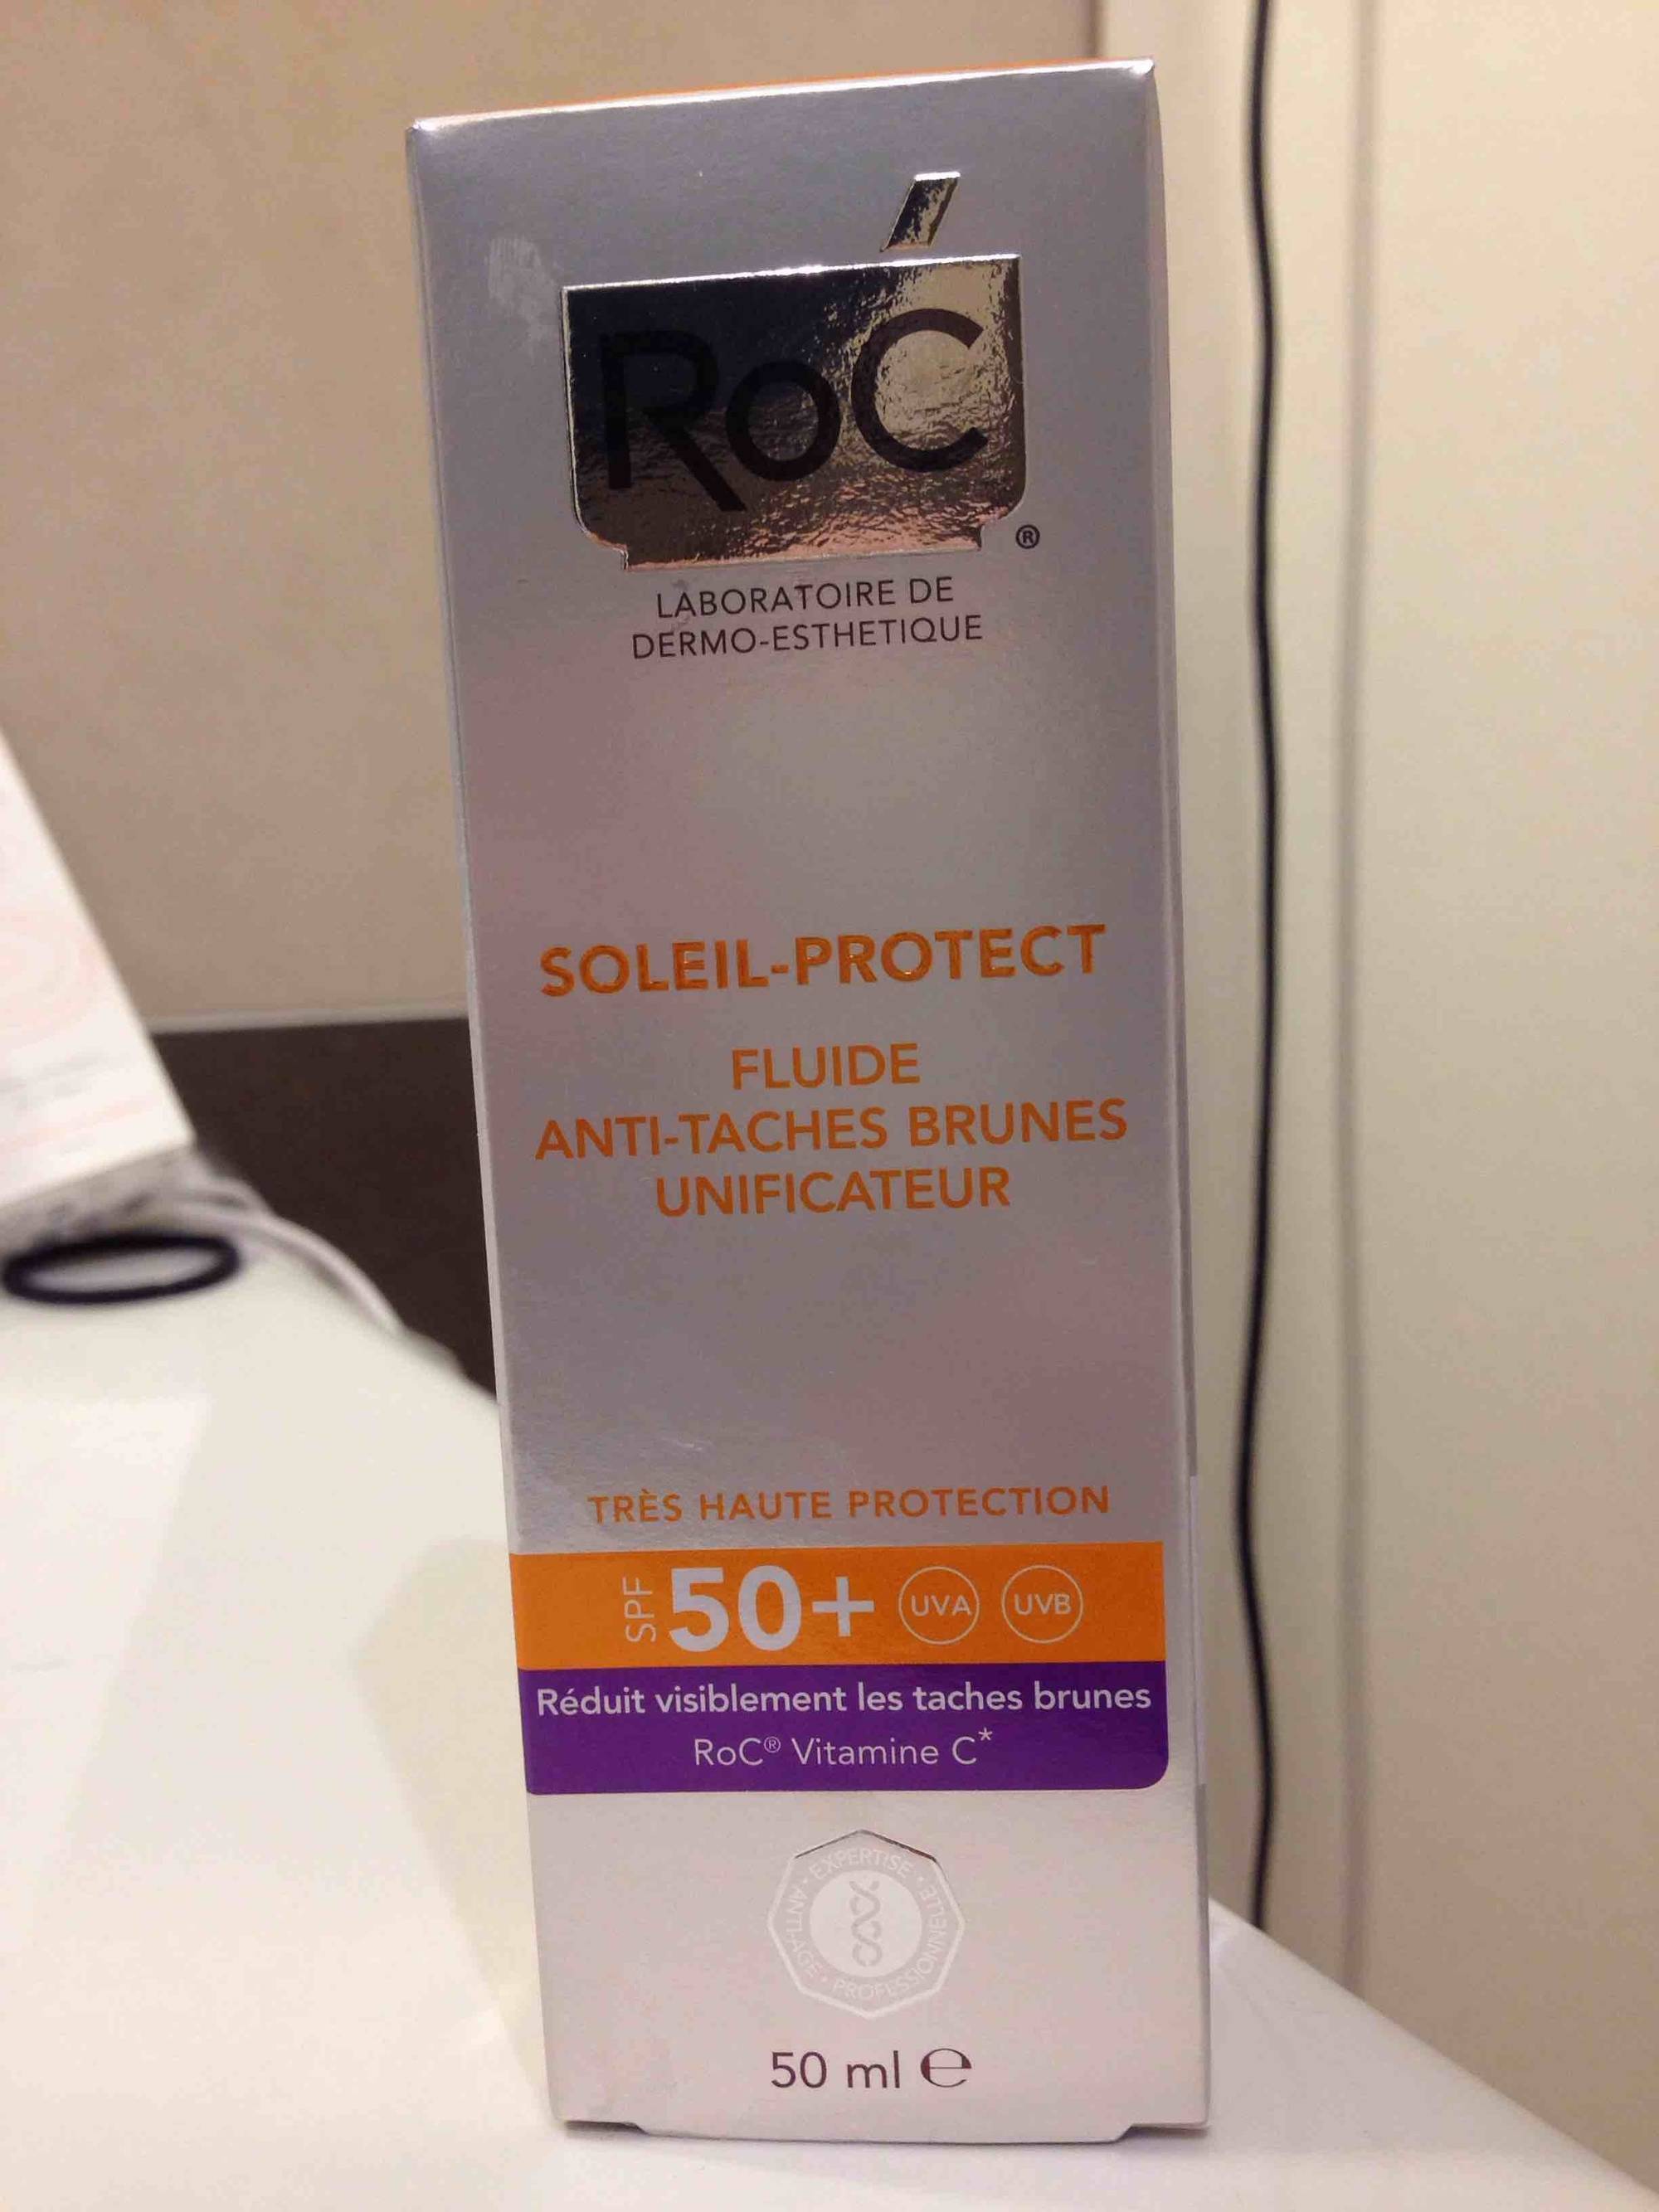 ROC - Soleil-protect - Fluide anti-taches brunes unificateur SPF50+